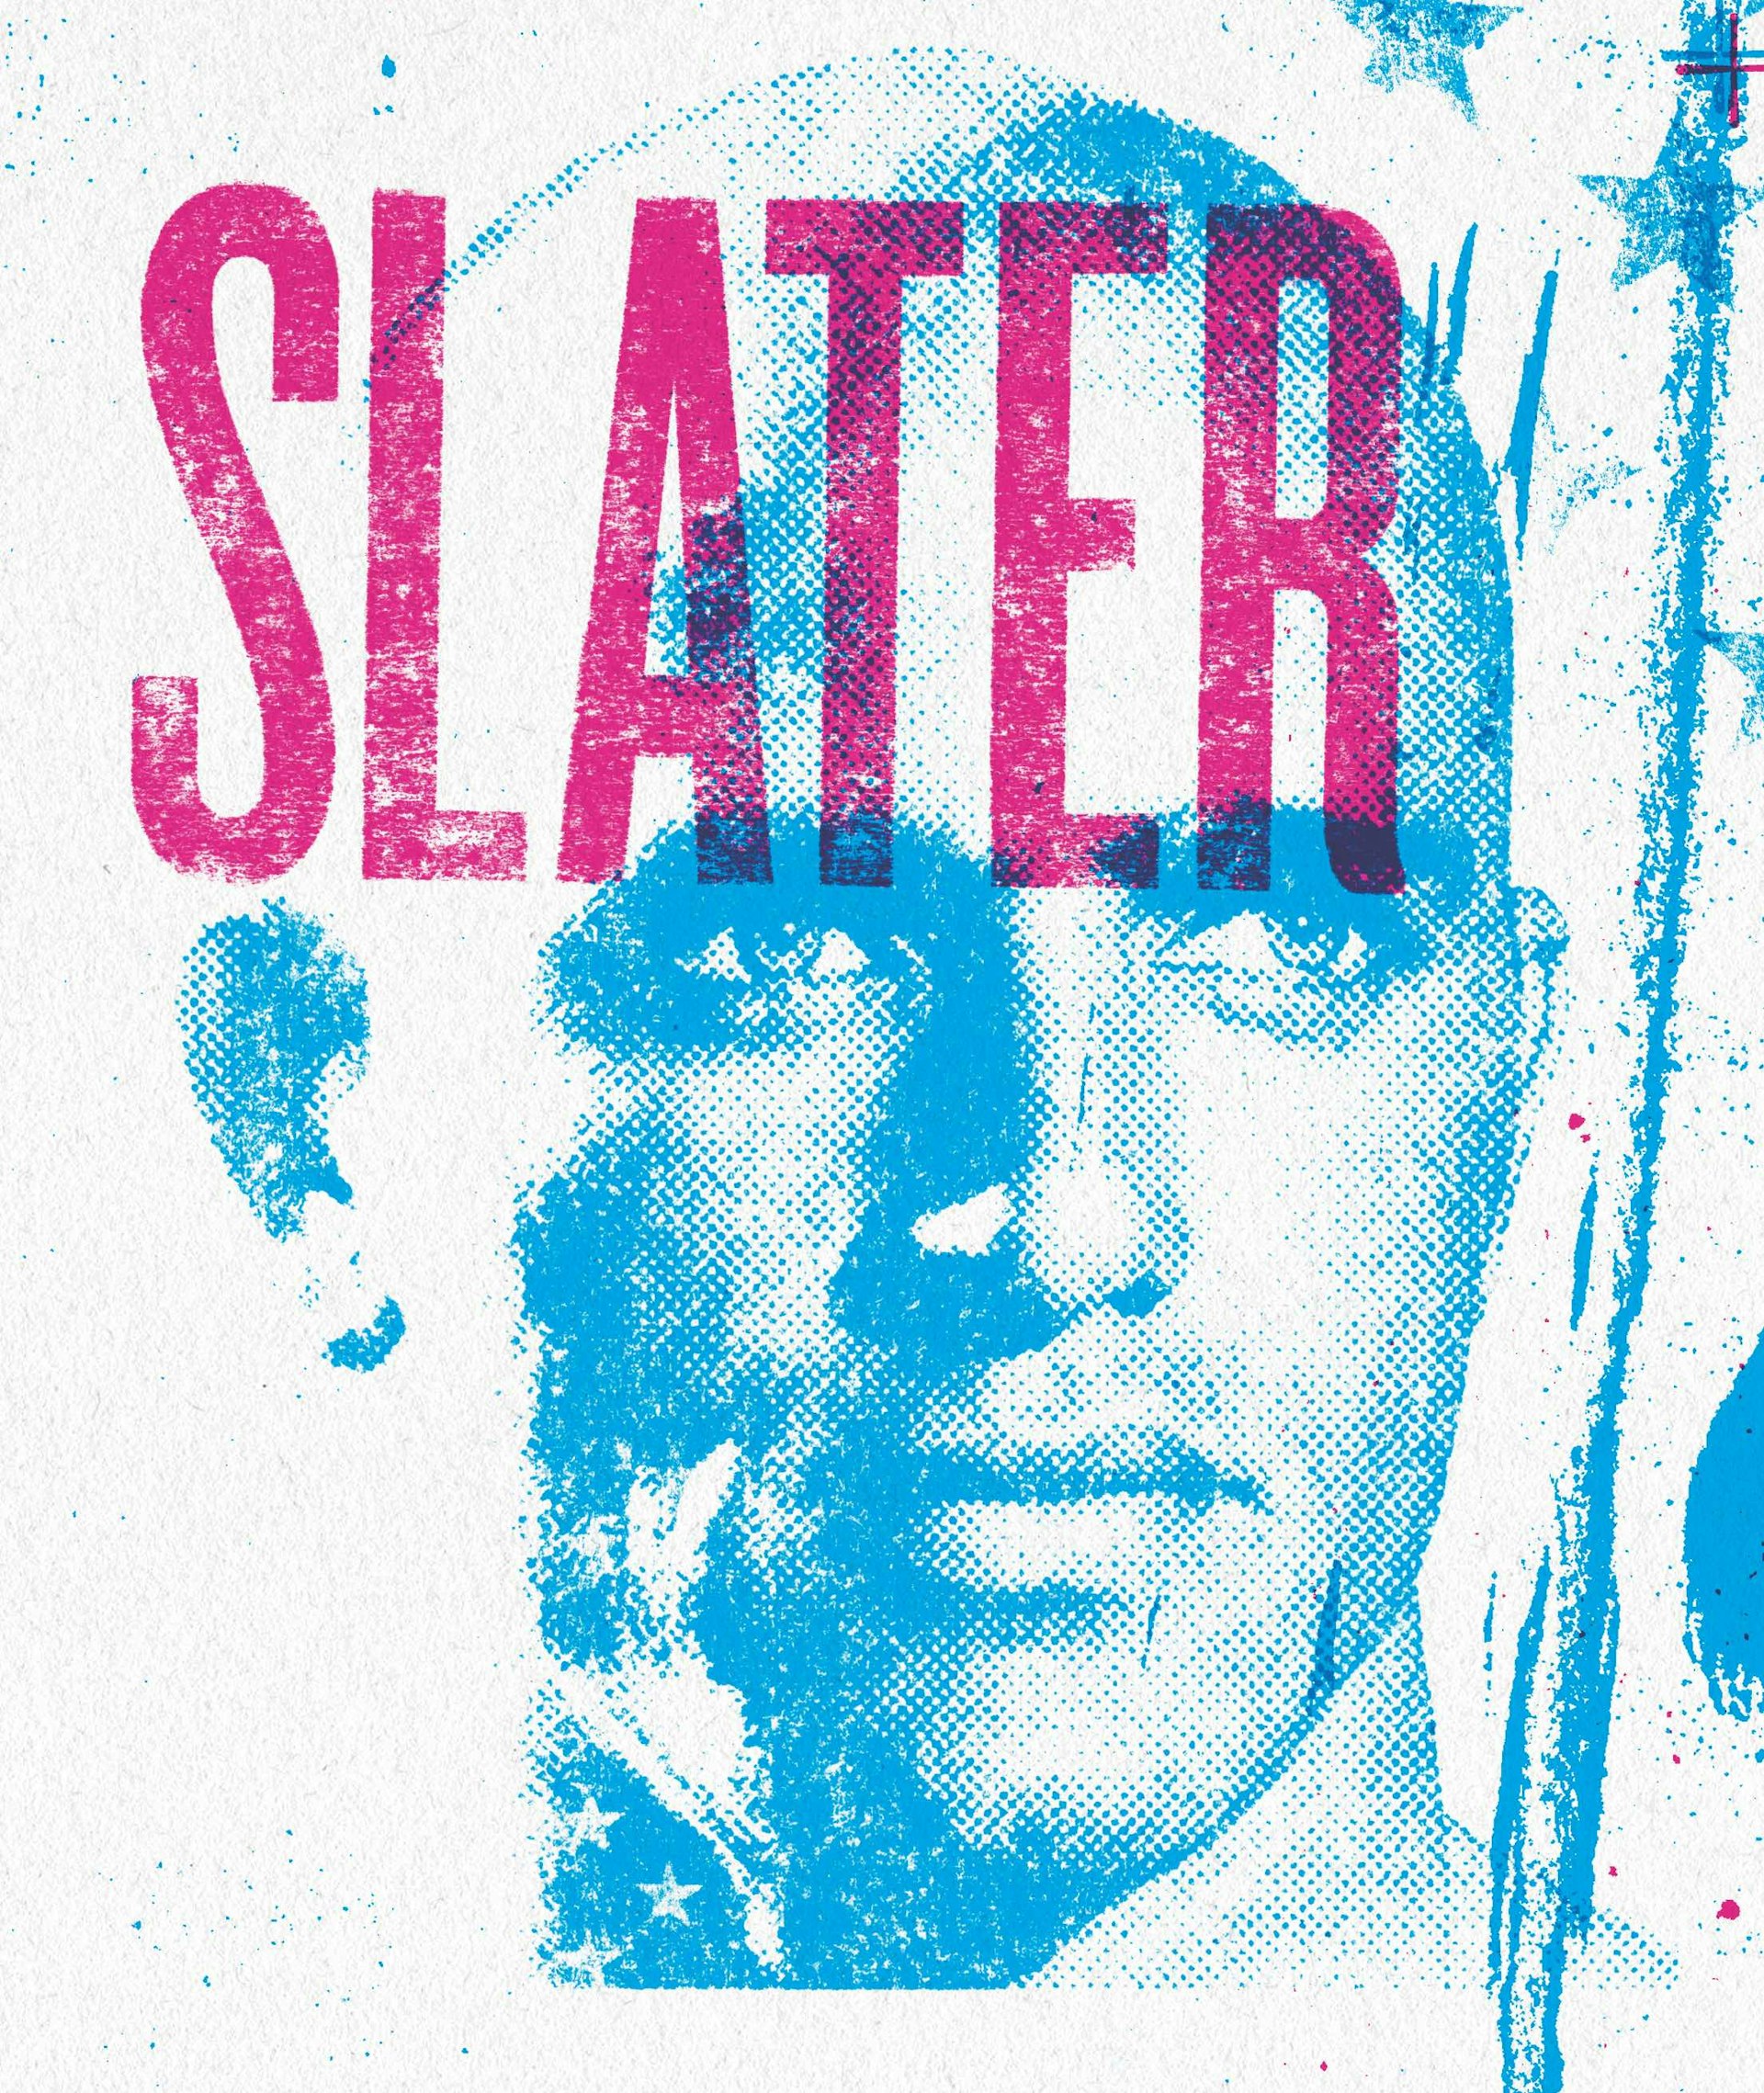 Slater